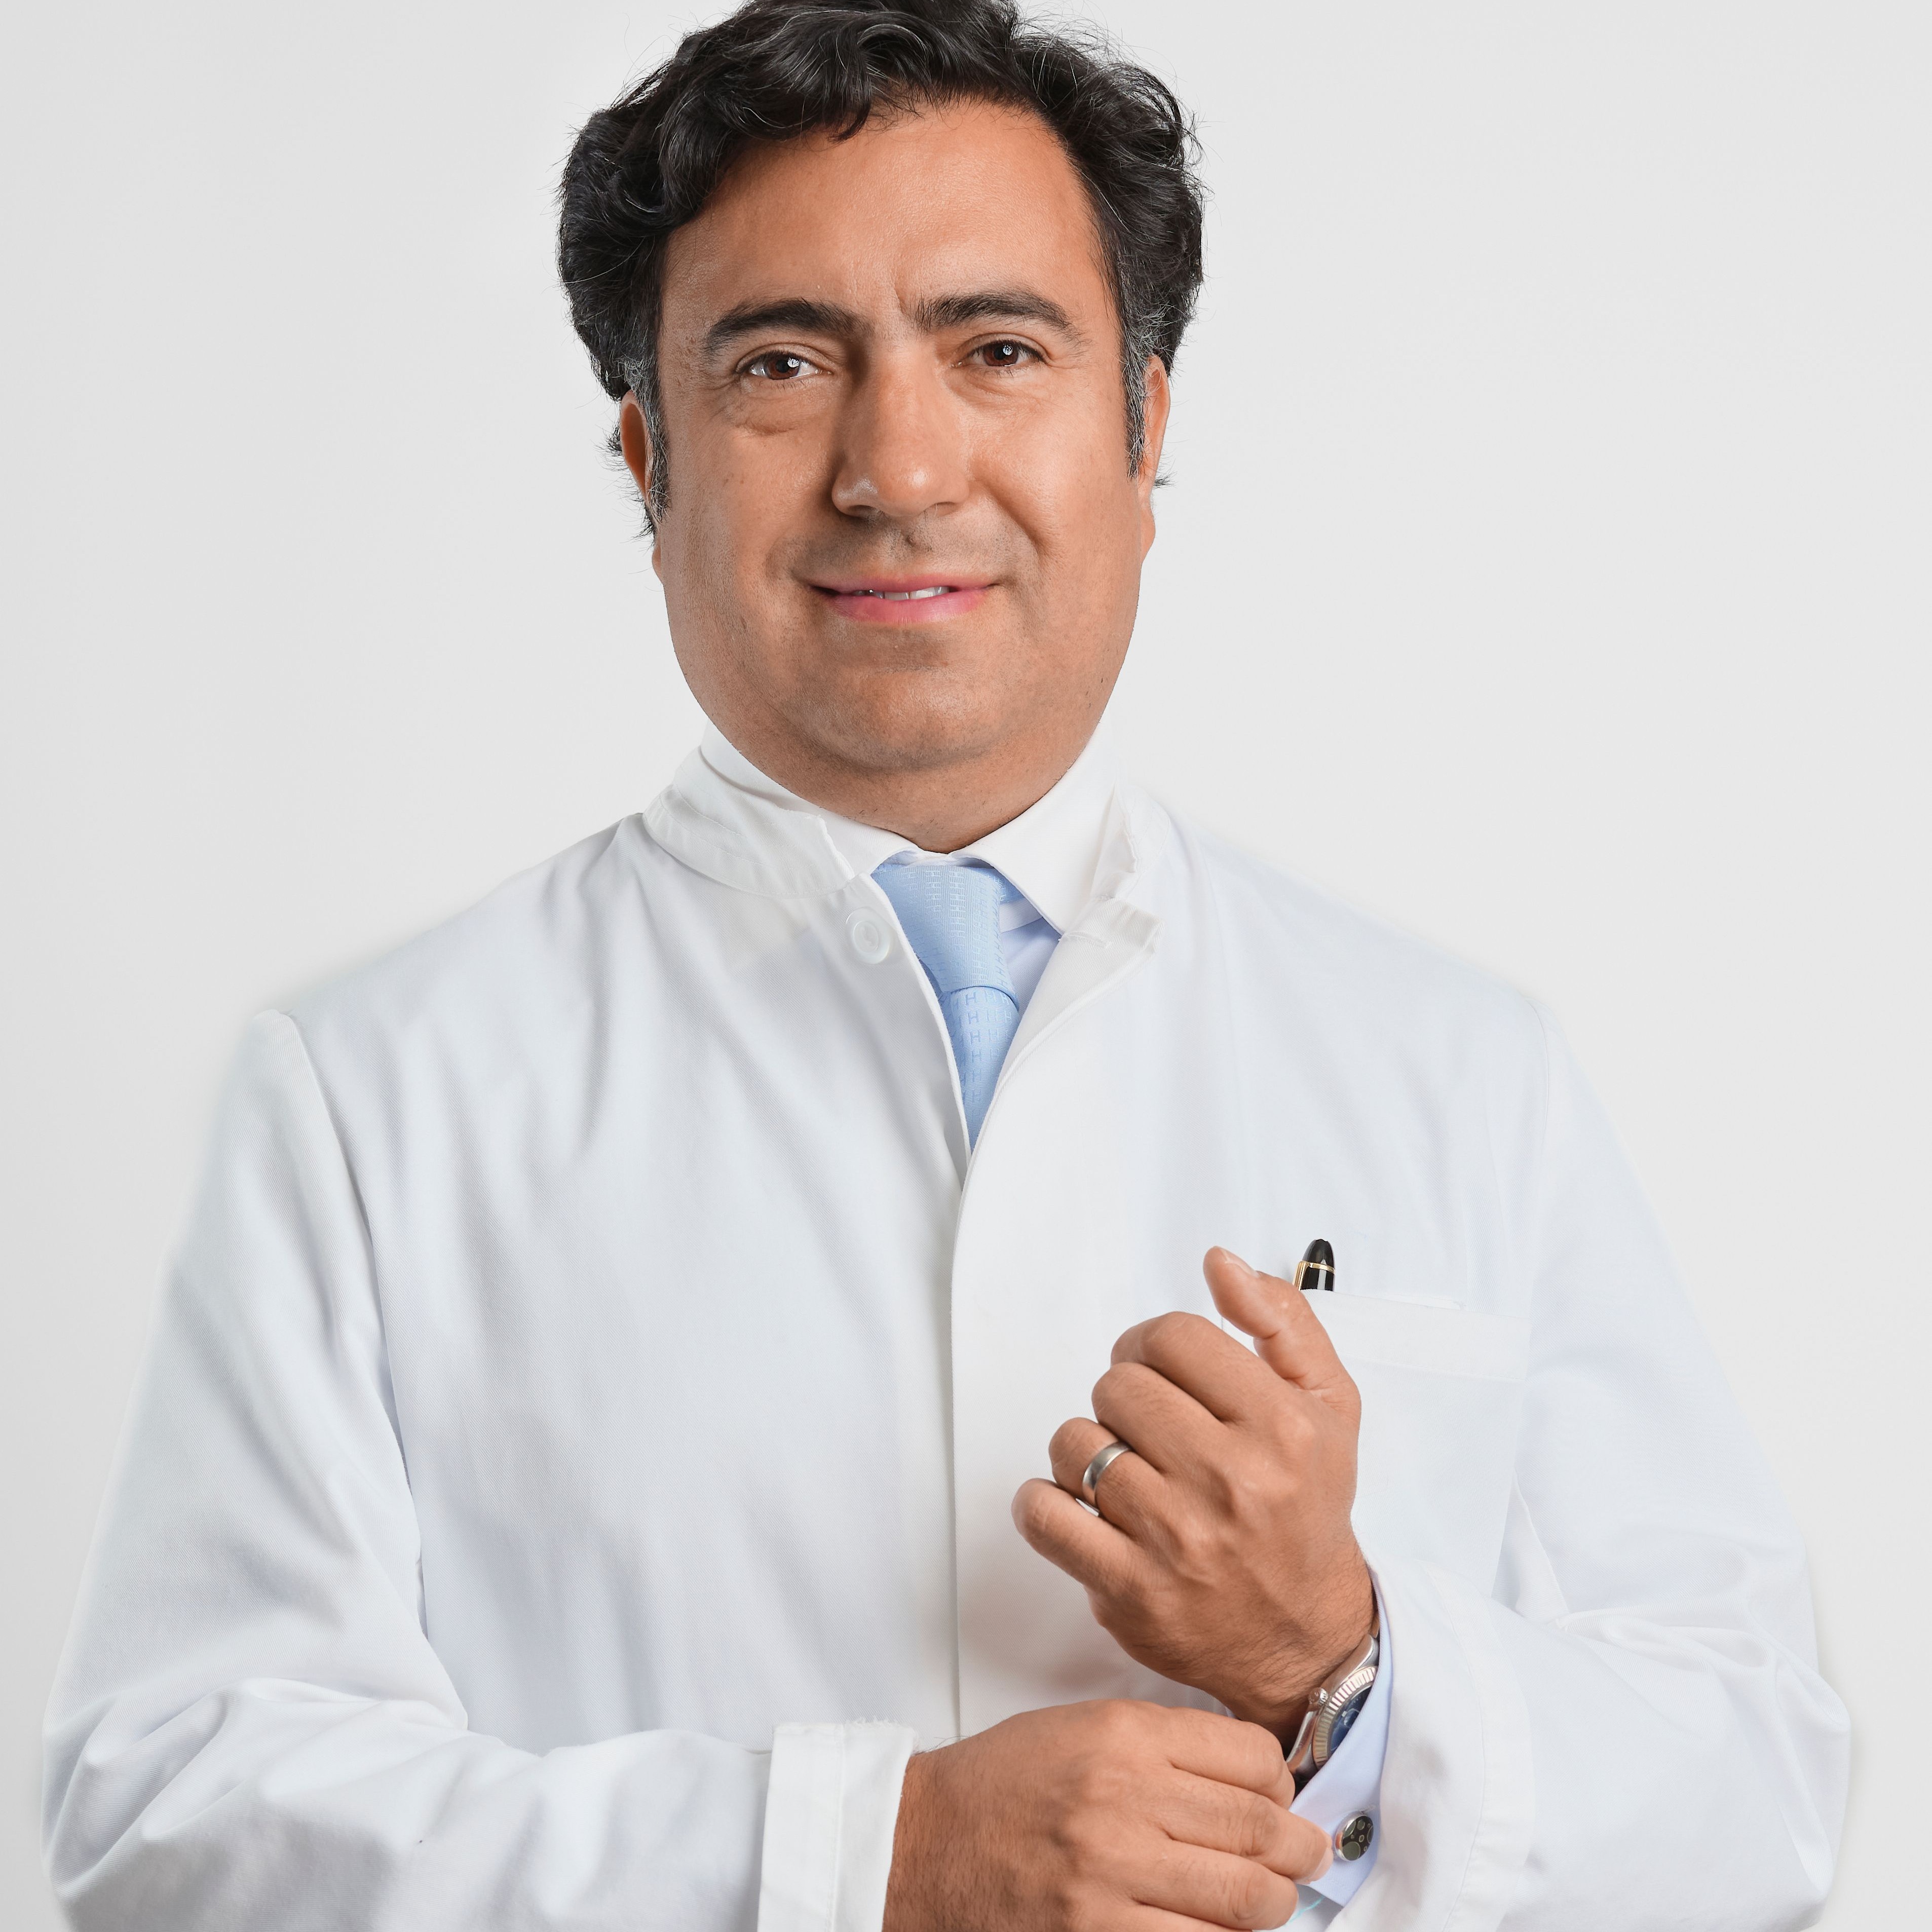 Blépharoplastie des Paupières supérieures, le Dr Tenorio répond à nos questions